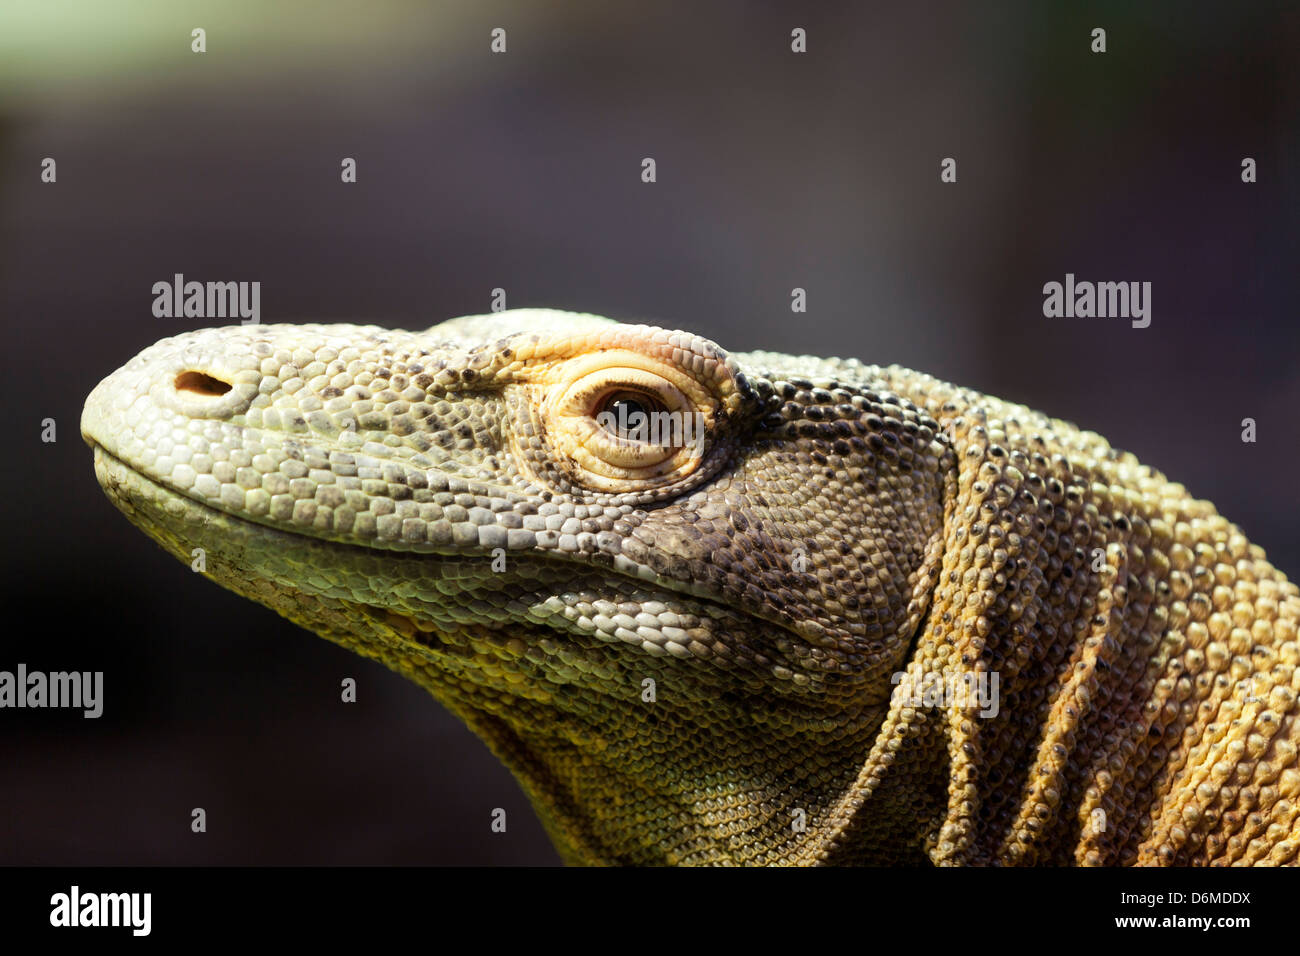 El dragón de Komodo, retrato de un dragón de Komodo. Foto de stock